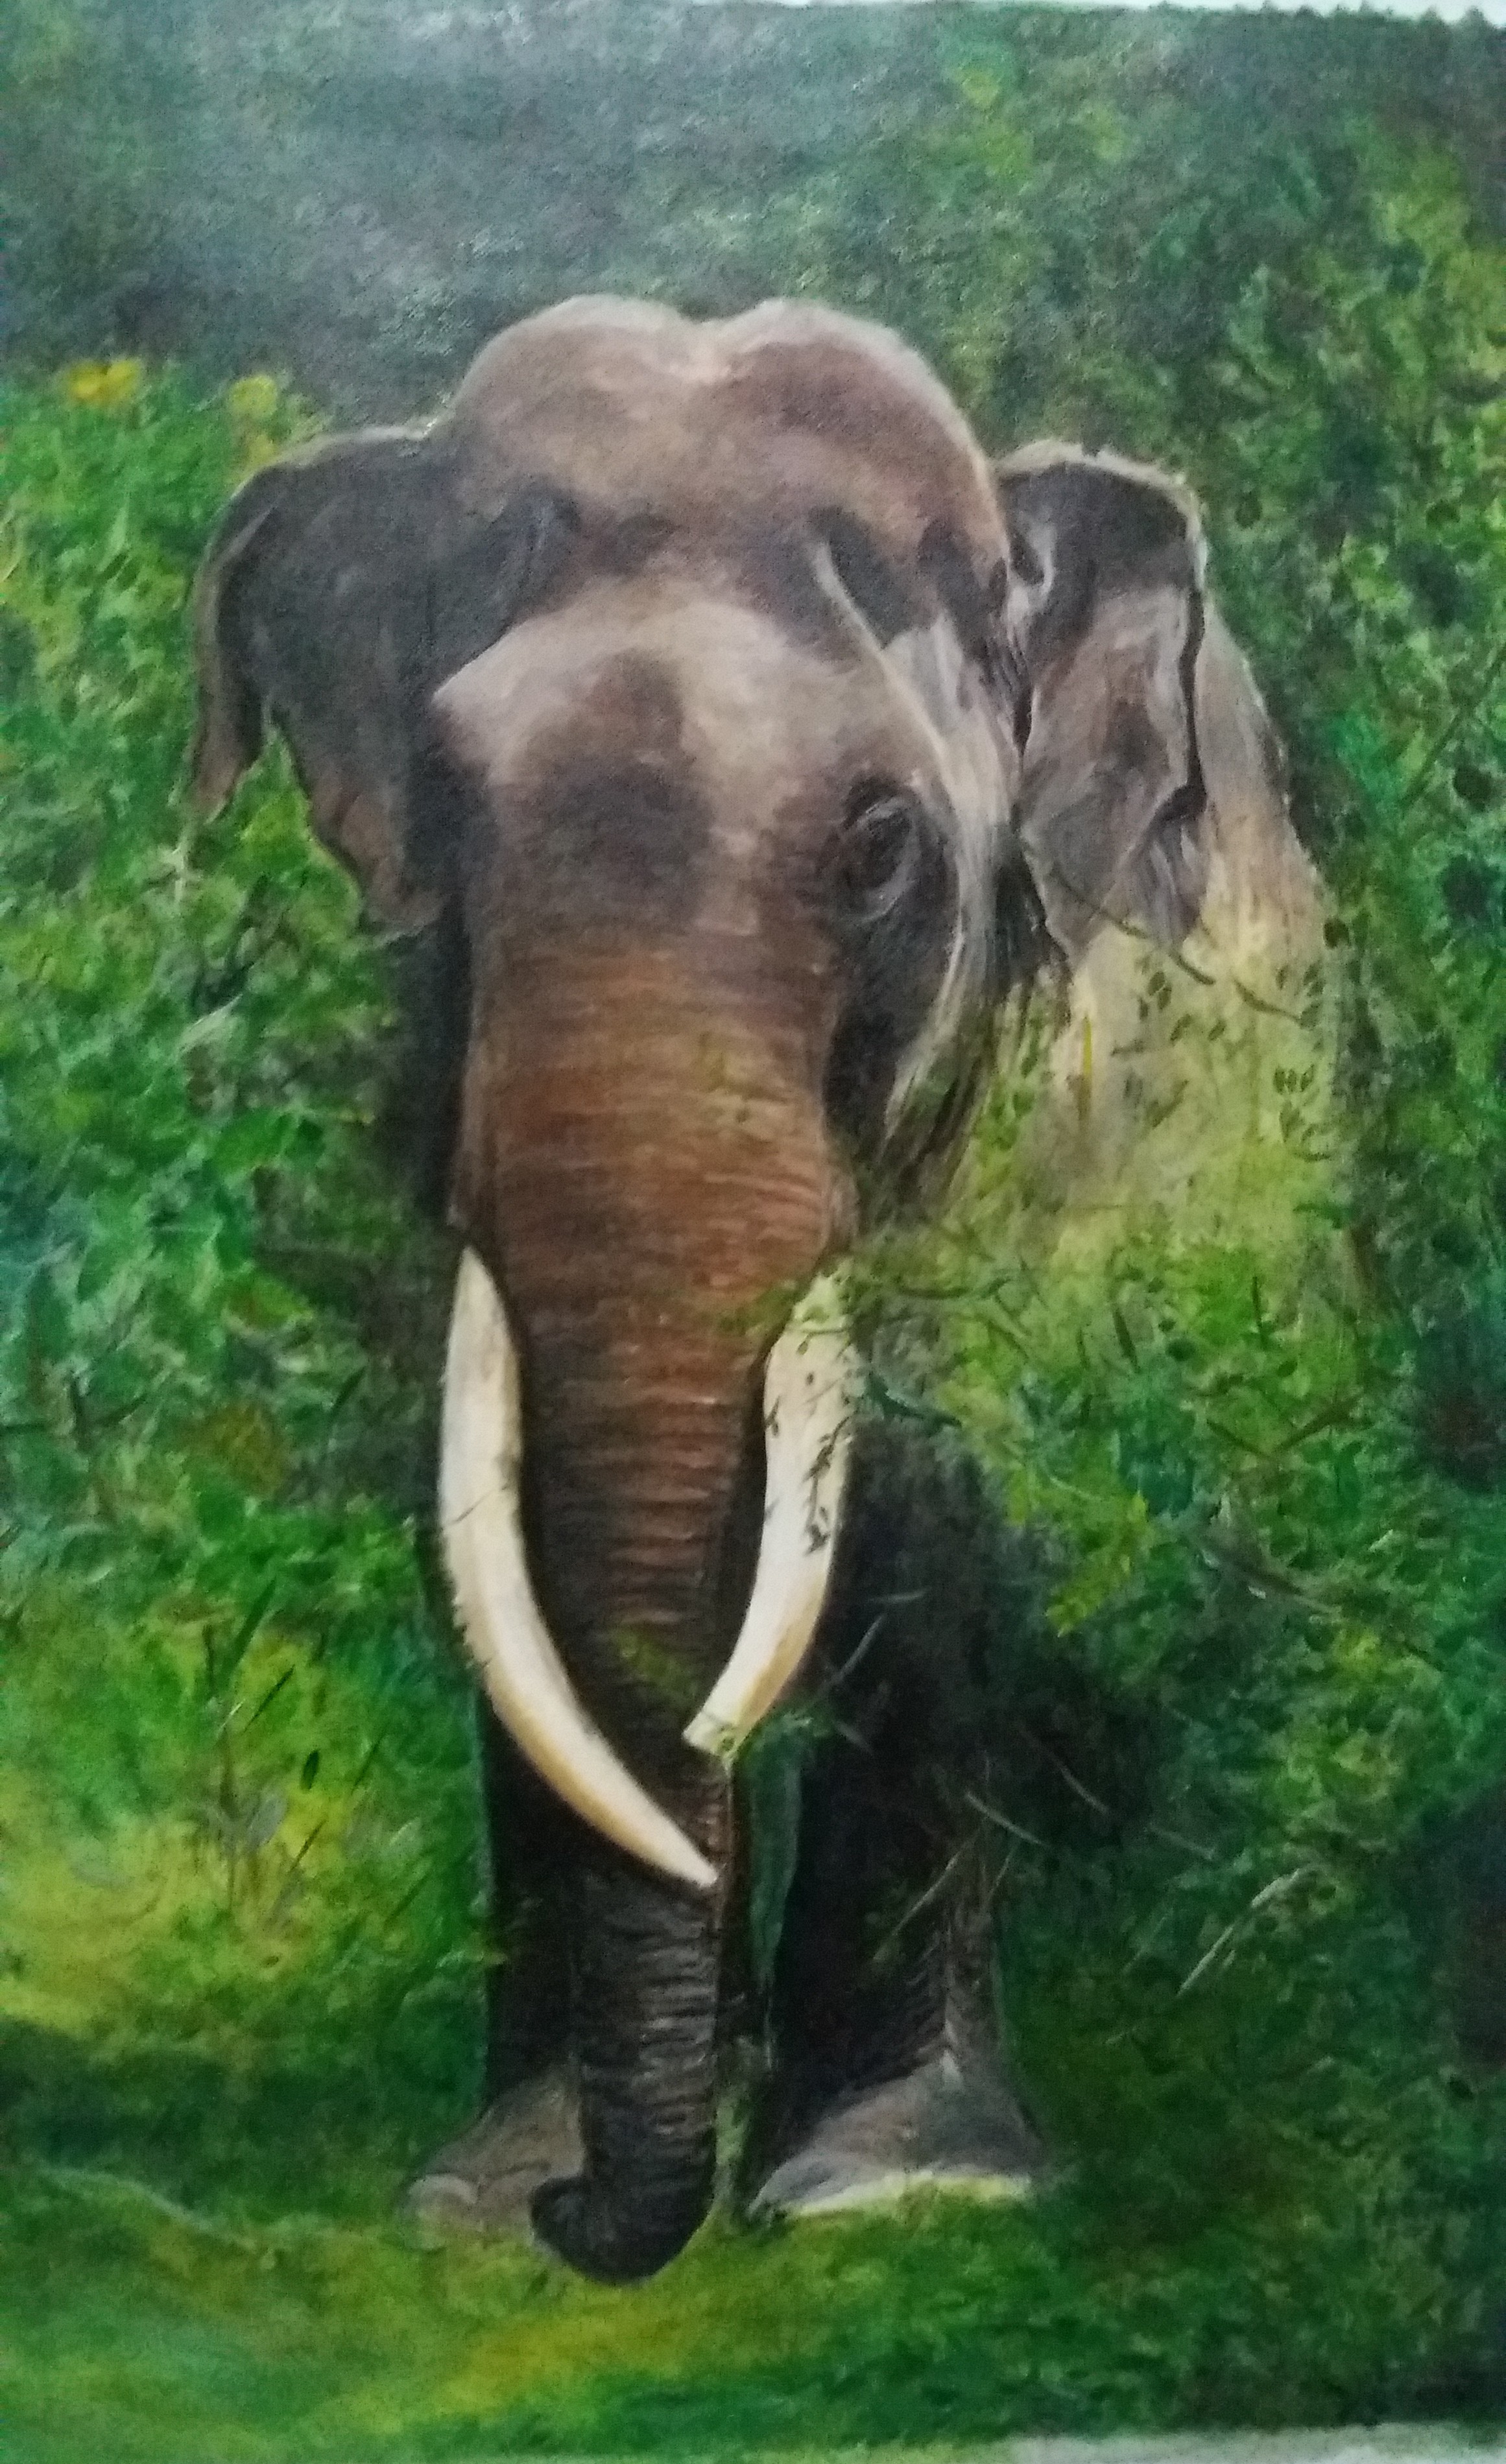 Painting by Asanka Indrajith